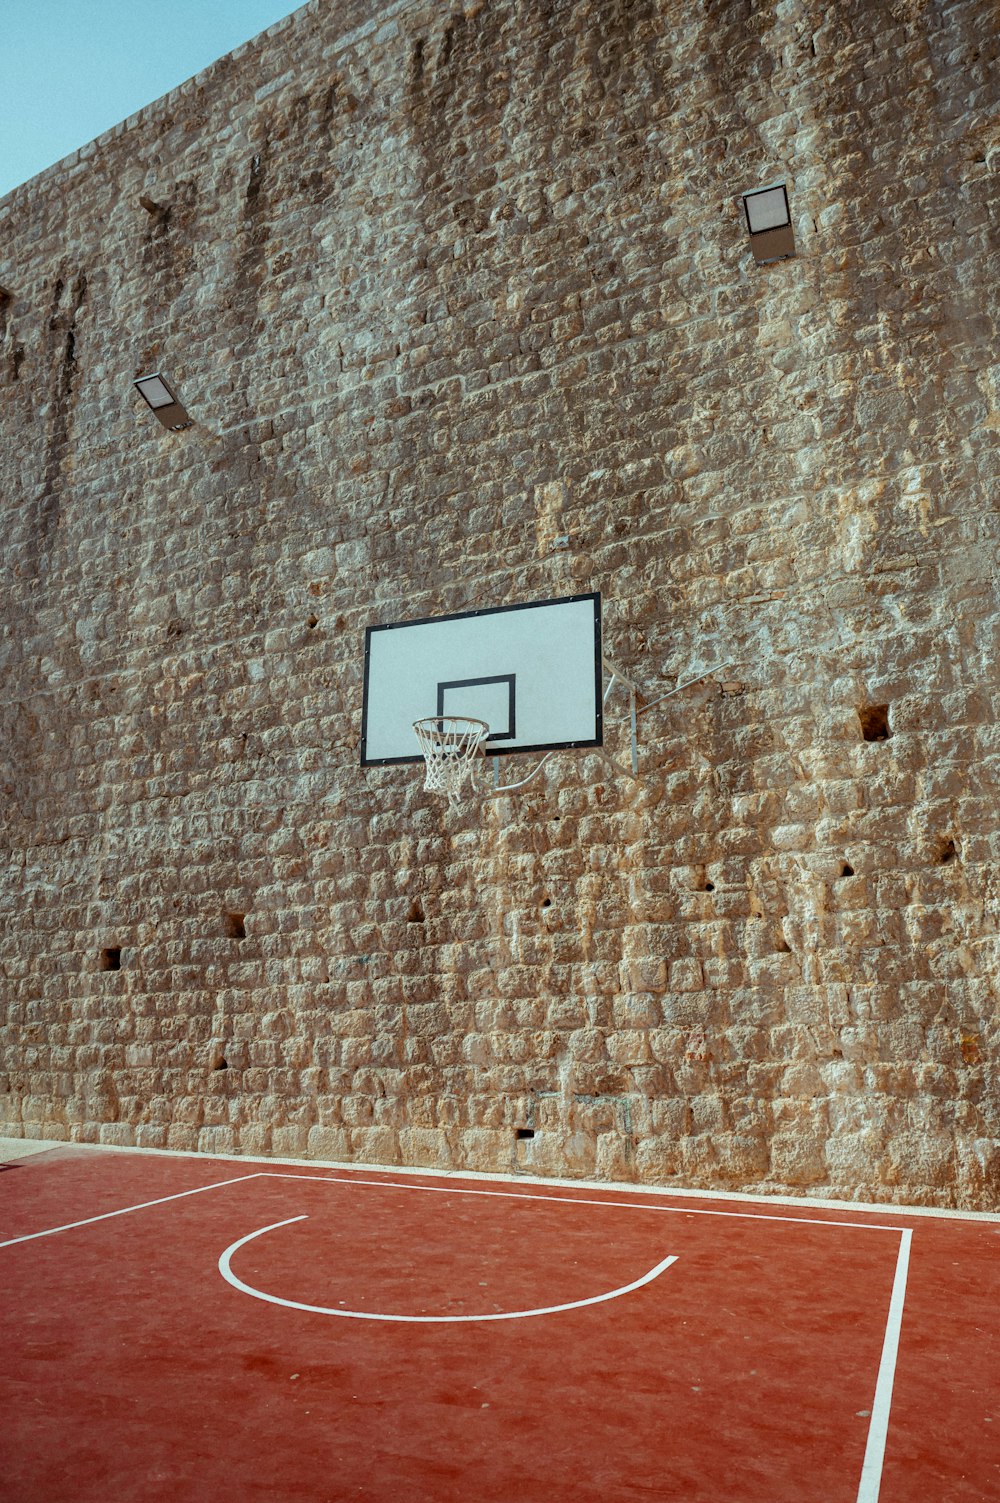 ein Basketballplatz vor einer Backsteinmauer